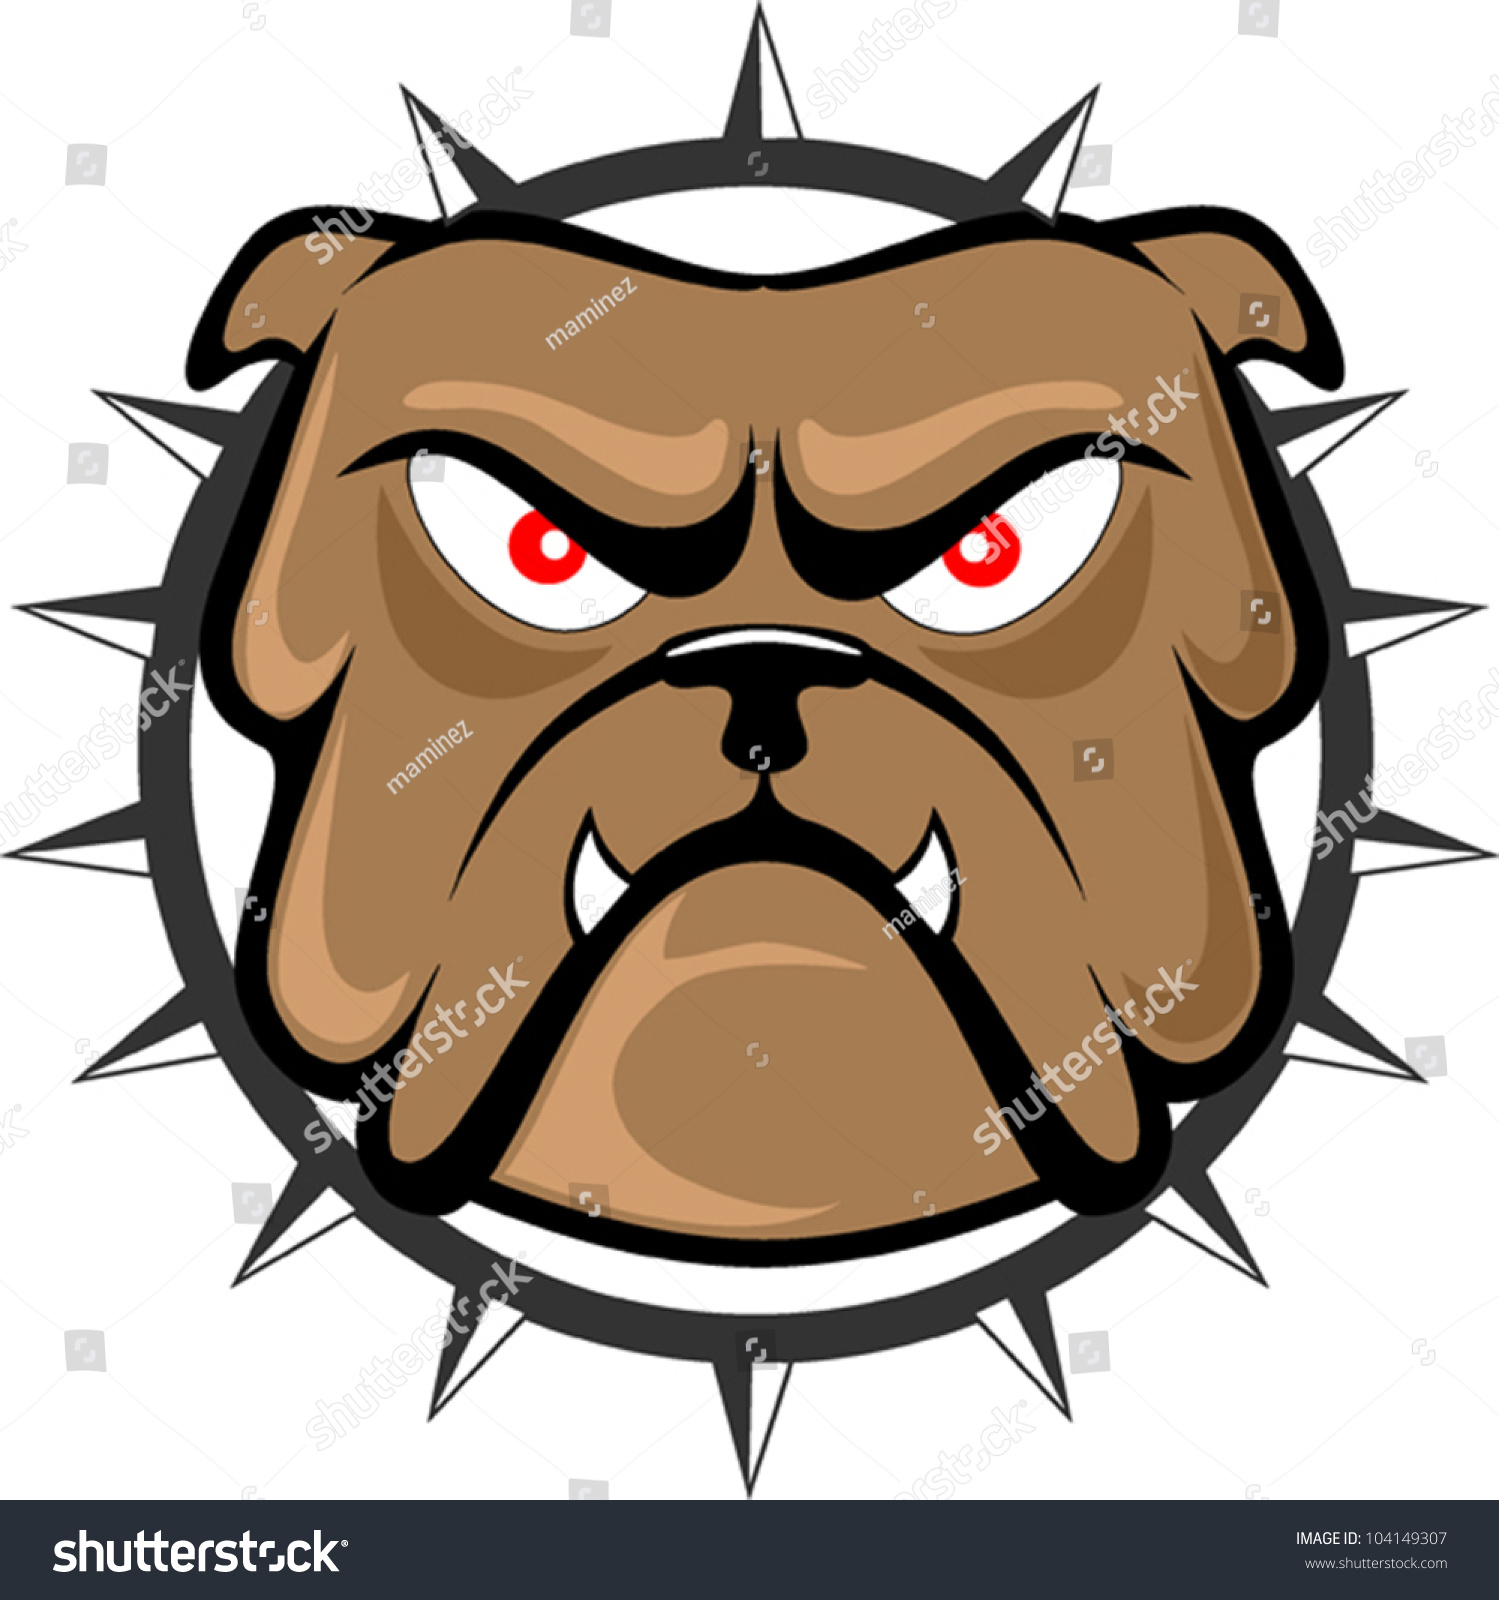 Bulldog Head Stock Vector Illustration 104149307 : Shutterstock